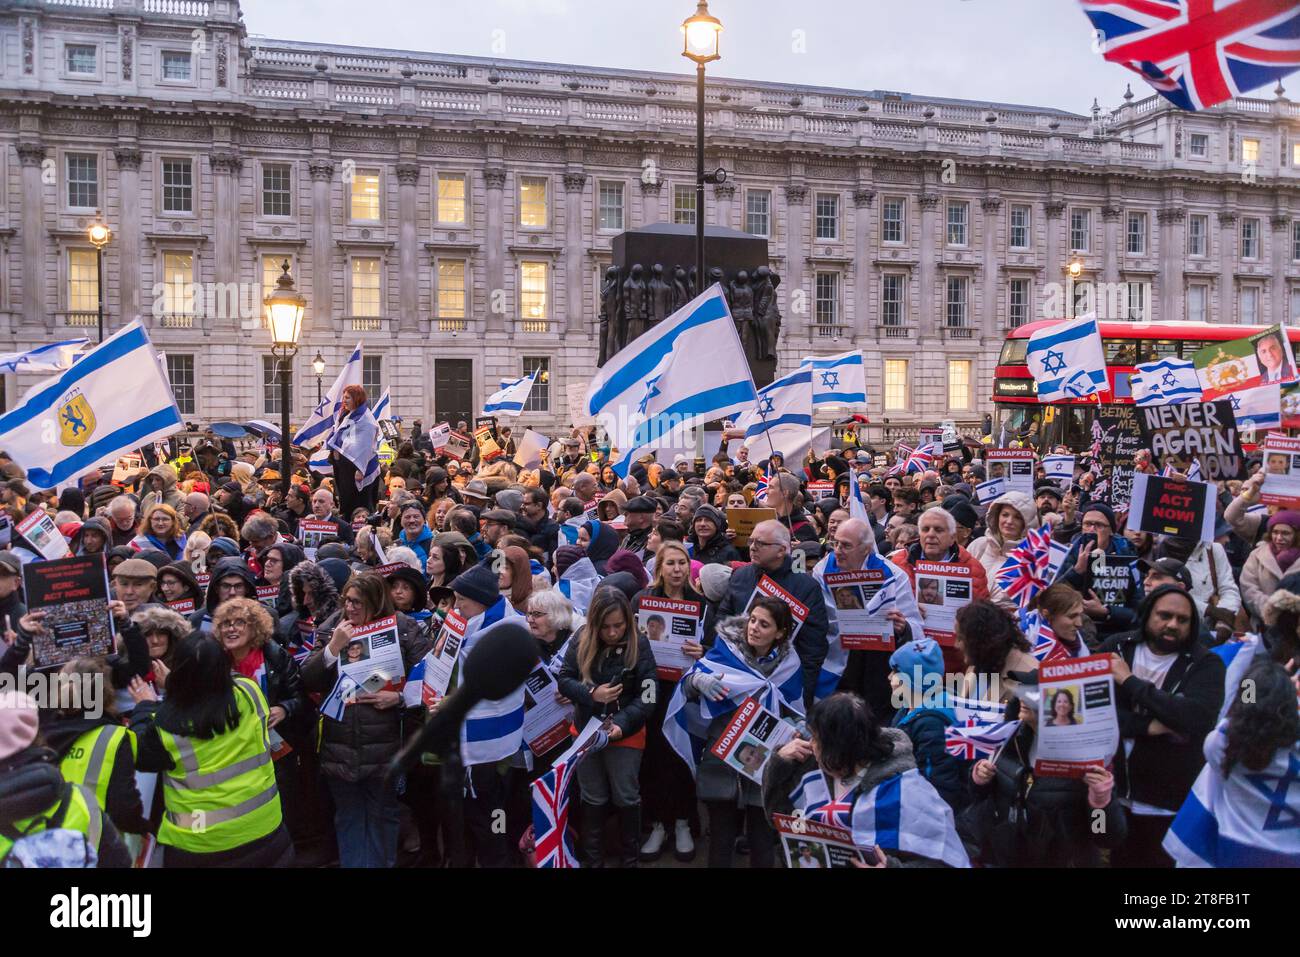 "Never Again is Now" è un evento di preghiera e protesta tenuto a Whitehall per esprimere solidarietà al popolo ebraico e per lottare contro l'antisemitismo, Foto Stock